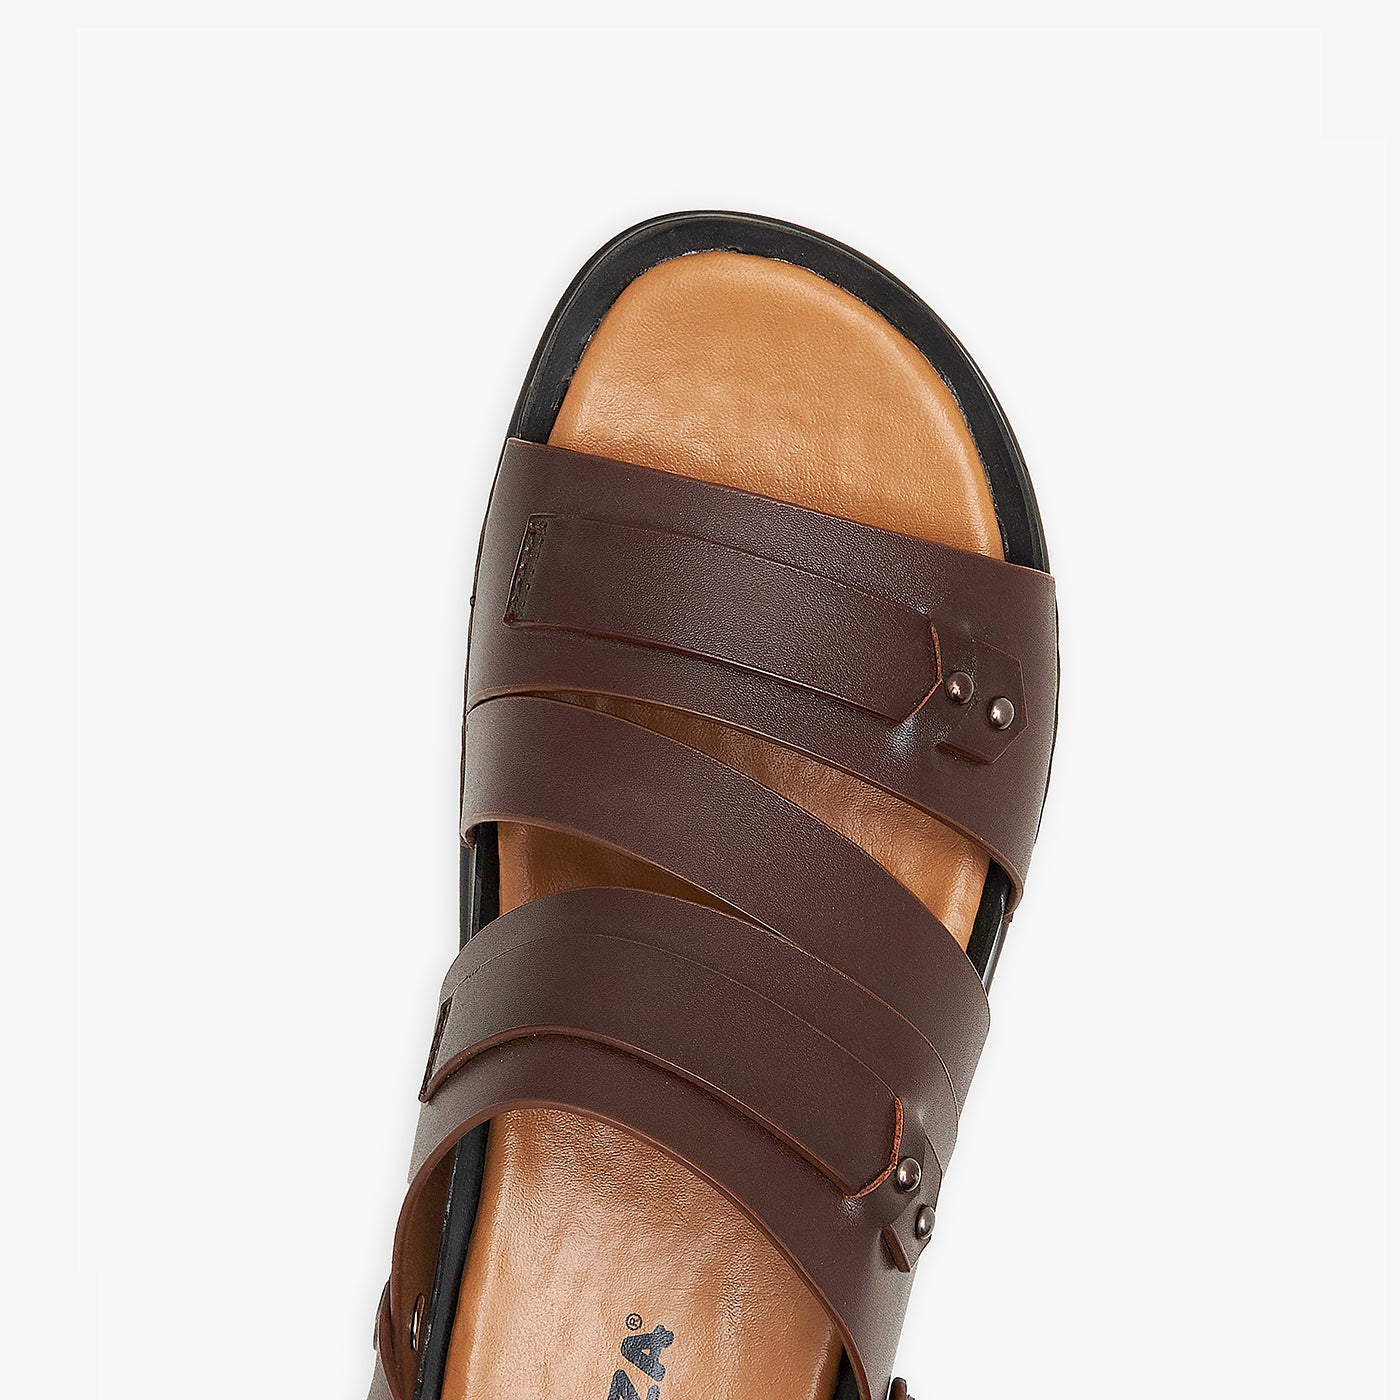 Men's Casual Comfort Sandals